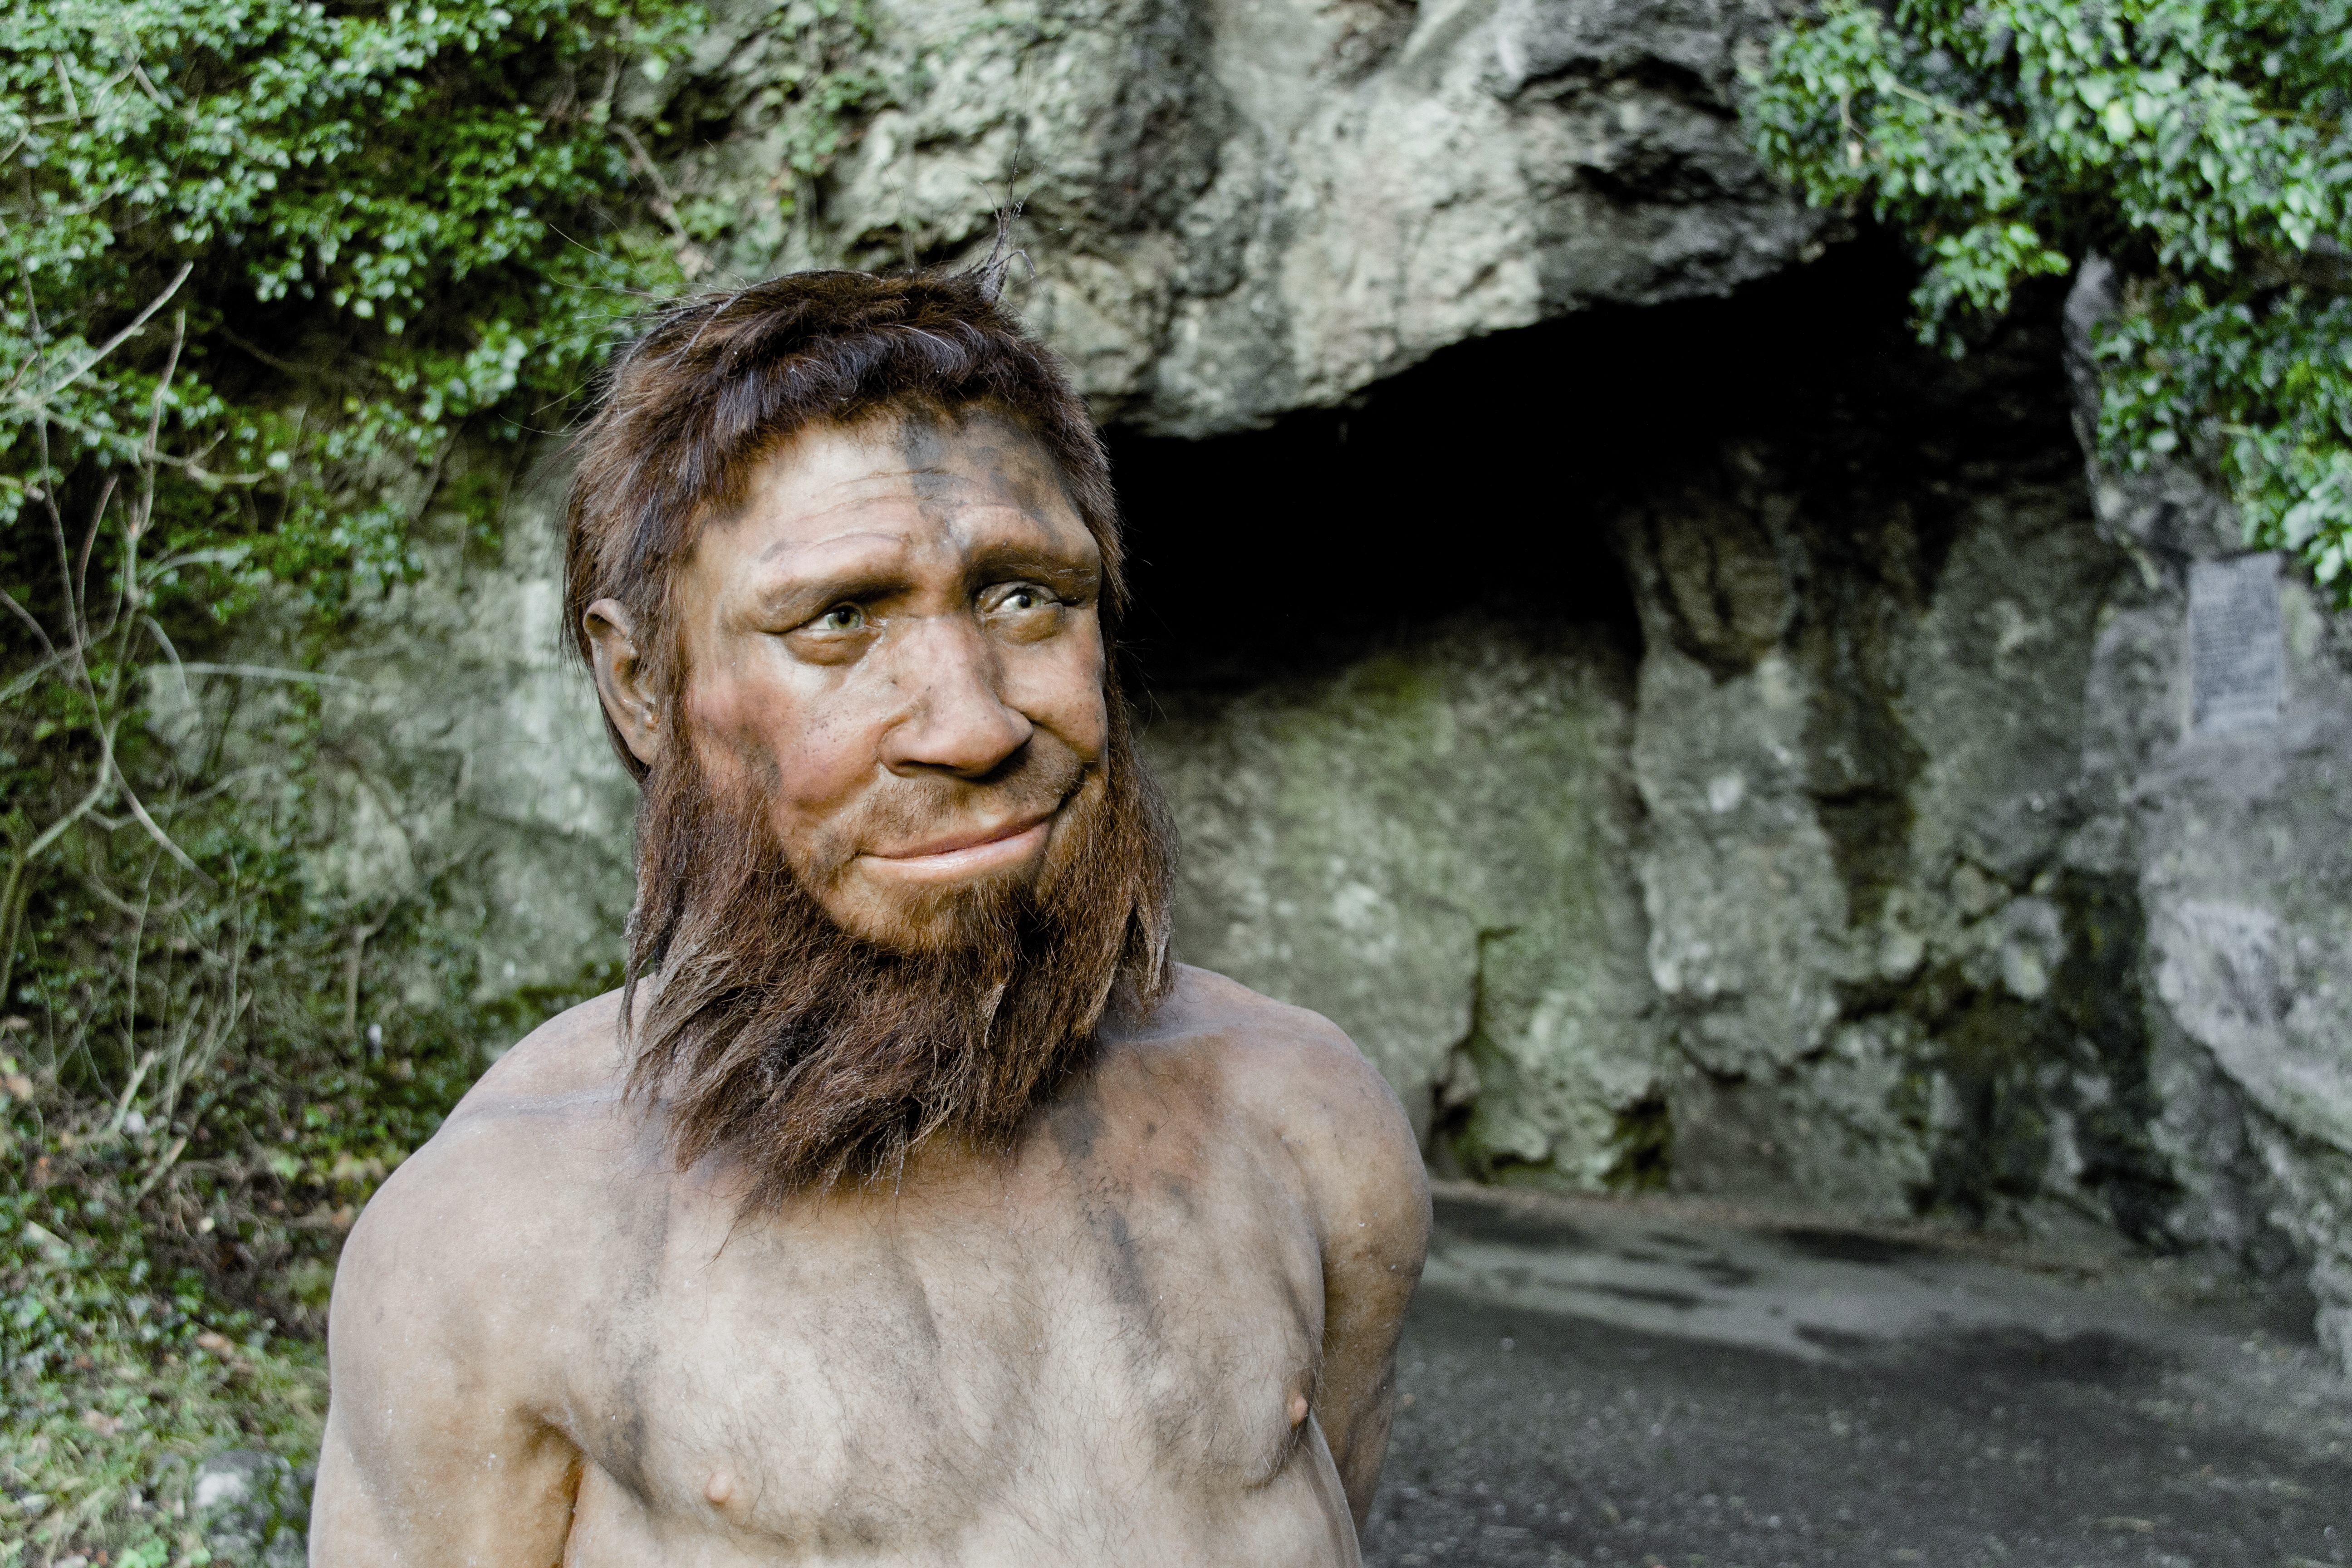 Venez découvrir la Grotte de l'Homme de Spy qui surplombe la vallée de l'Orneau